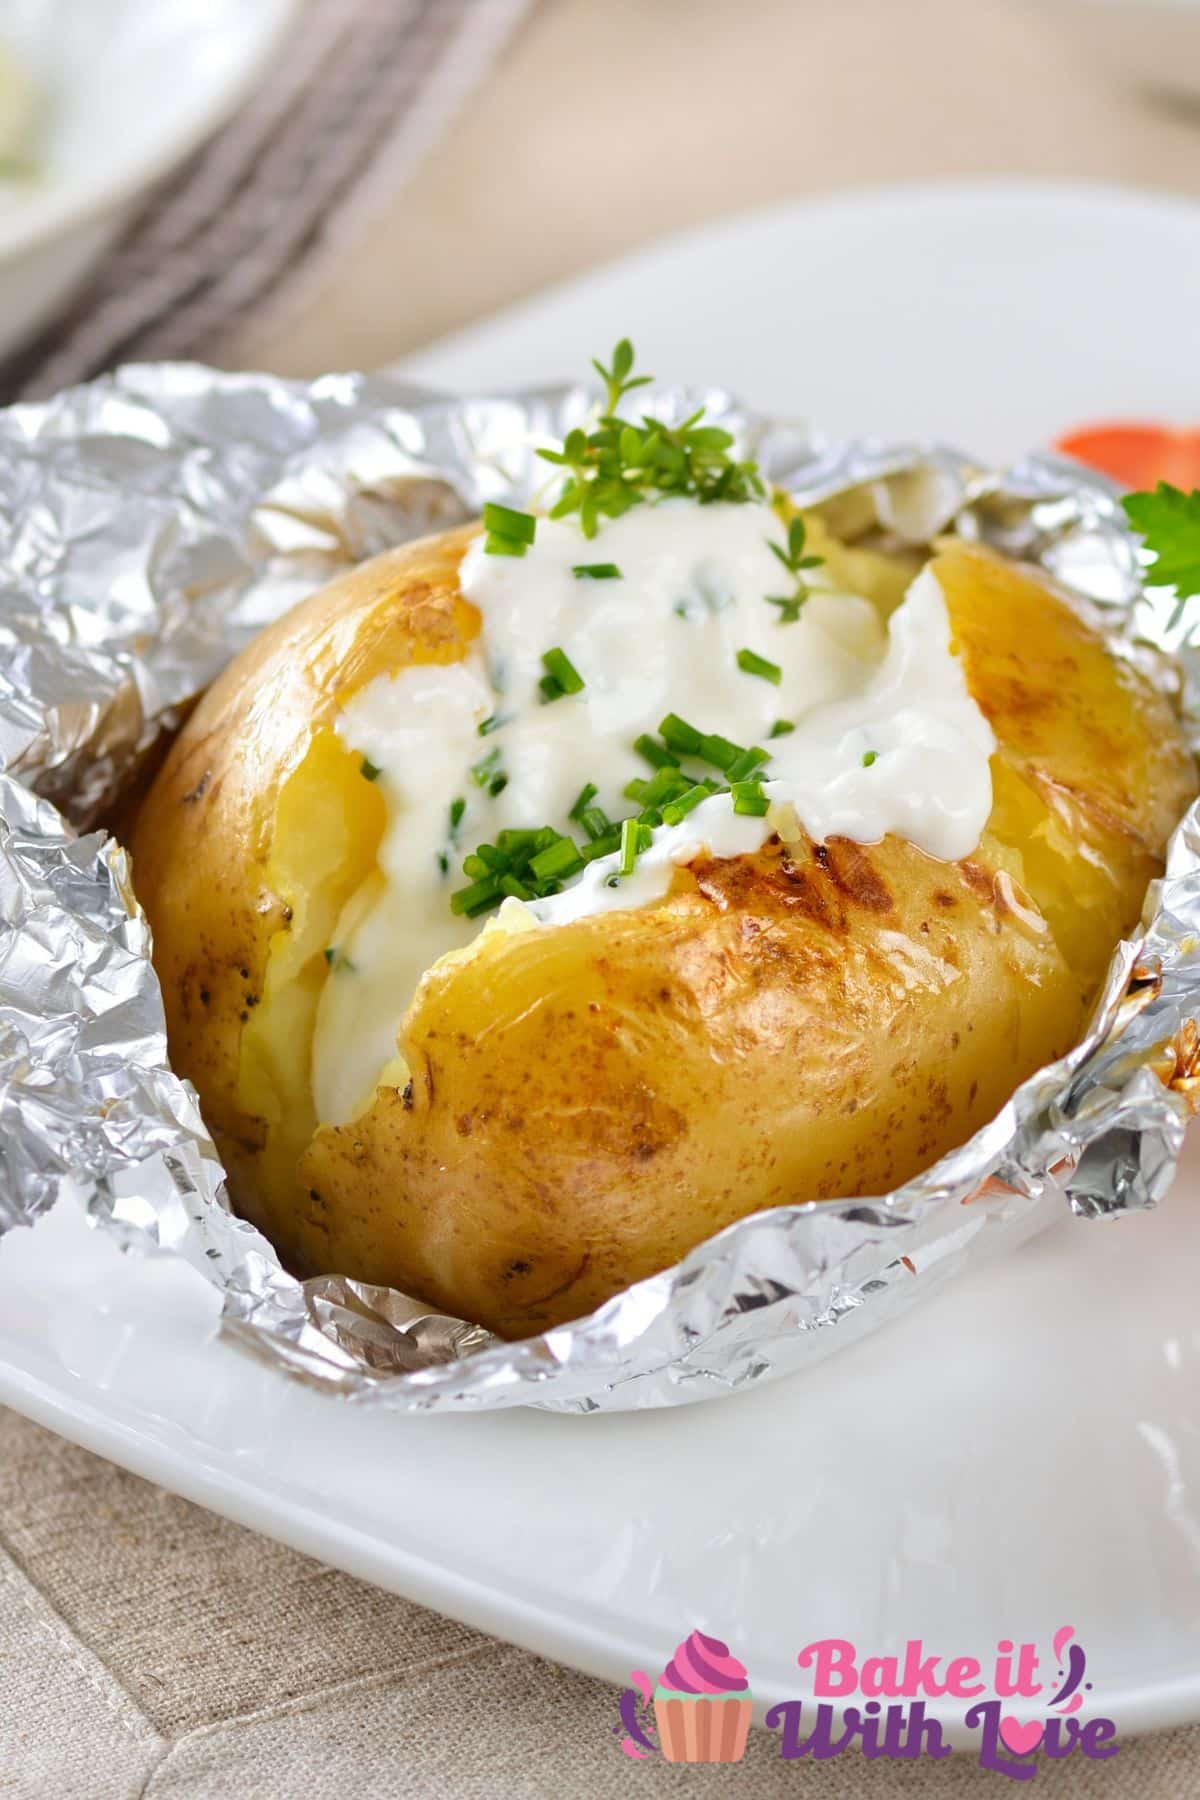 흰색 접시에 사워 크림과 골파를 곁들인 구운 감자를 보여주는 키가 큰 이미지.